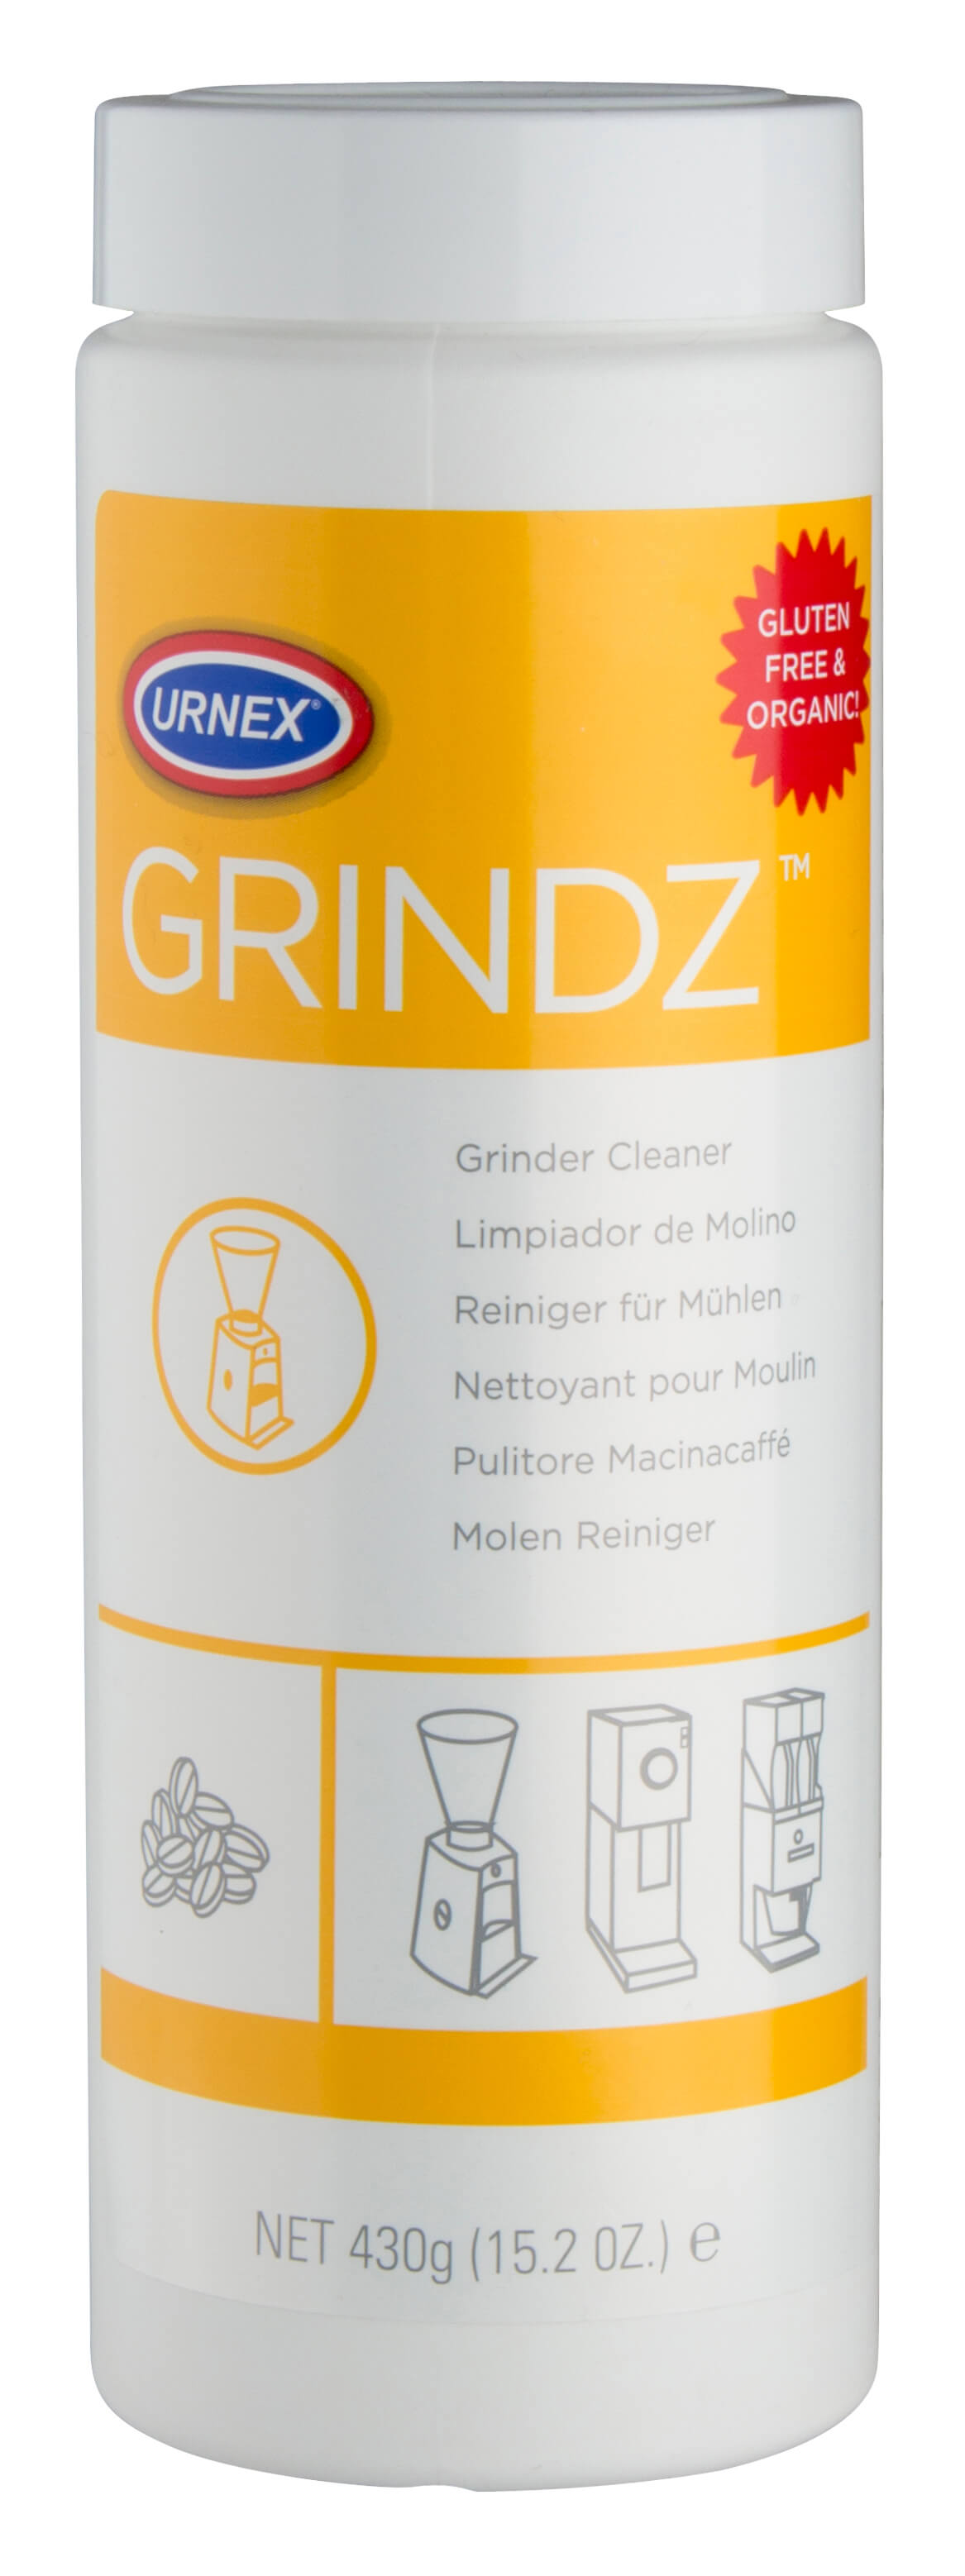 Cleaner for coffee grinder, Grindz Urnex, 430g